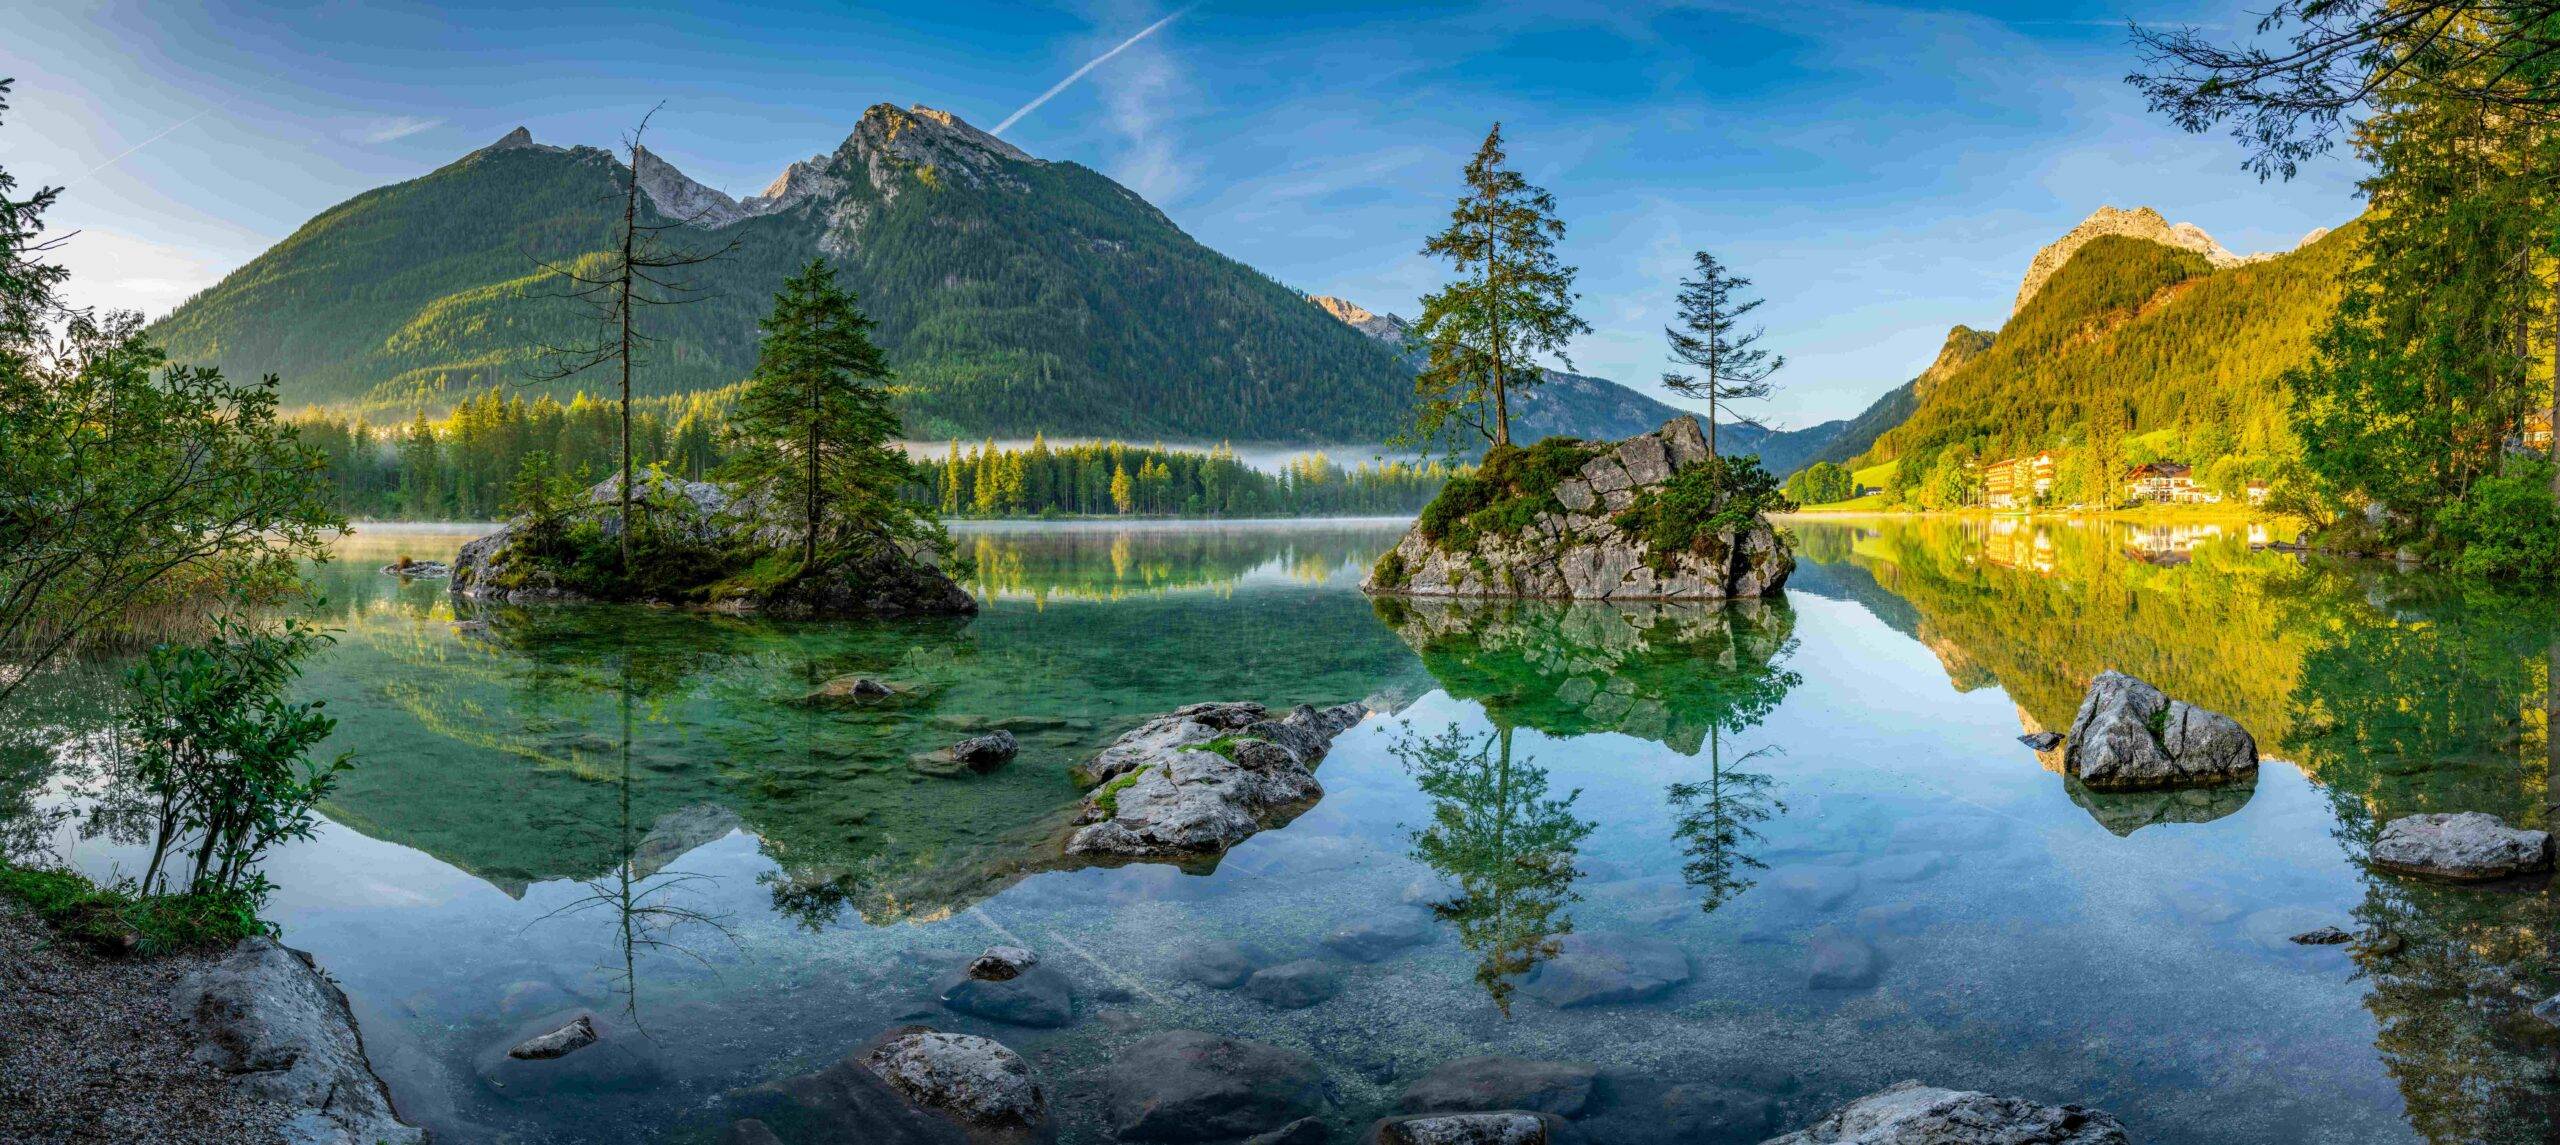 Hintersee in den Bayerischen Alpen an der österreichischen Grenze, Deutschland, Europa